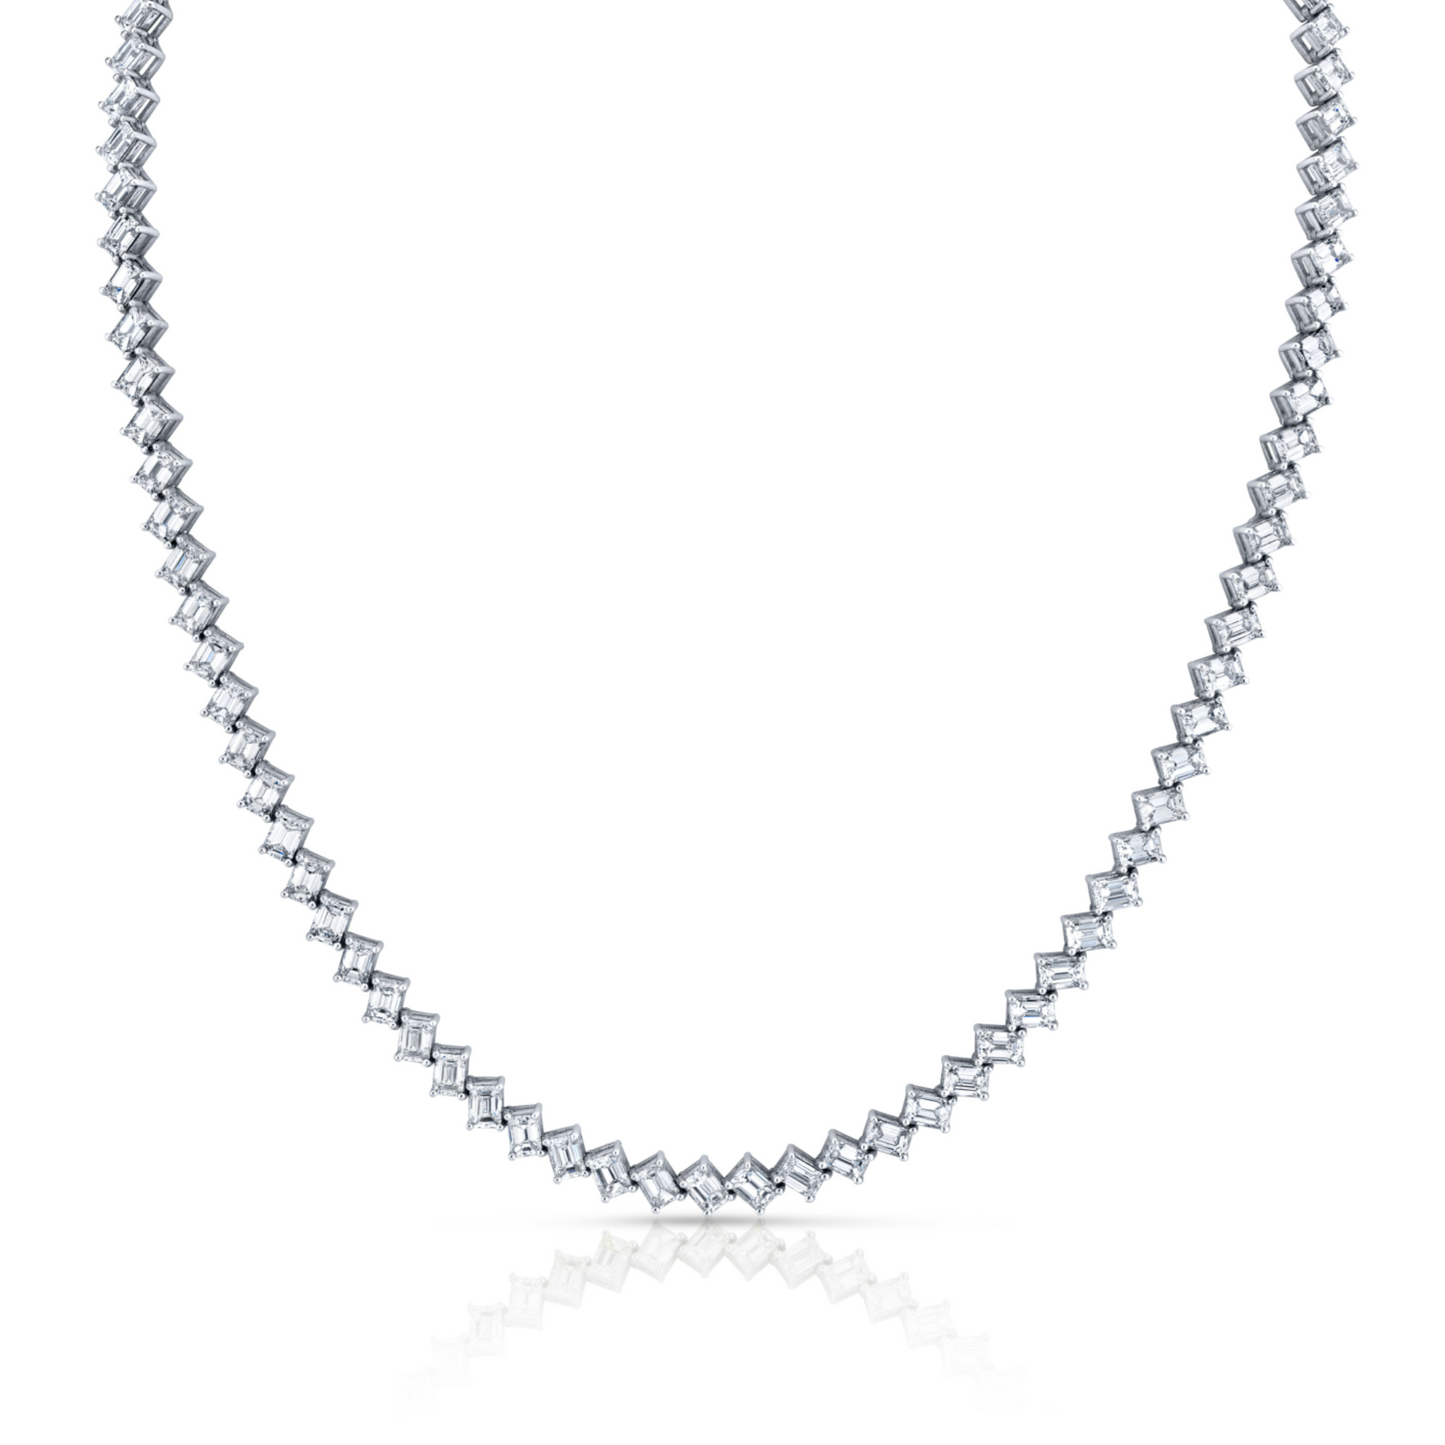 18.13 Carat Diamond Emerald Cut Necklace